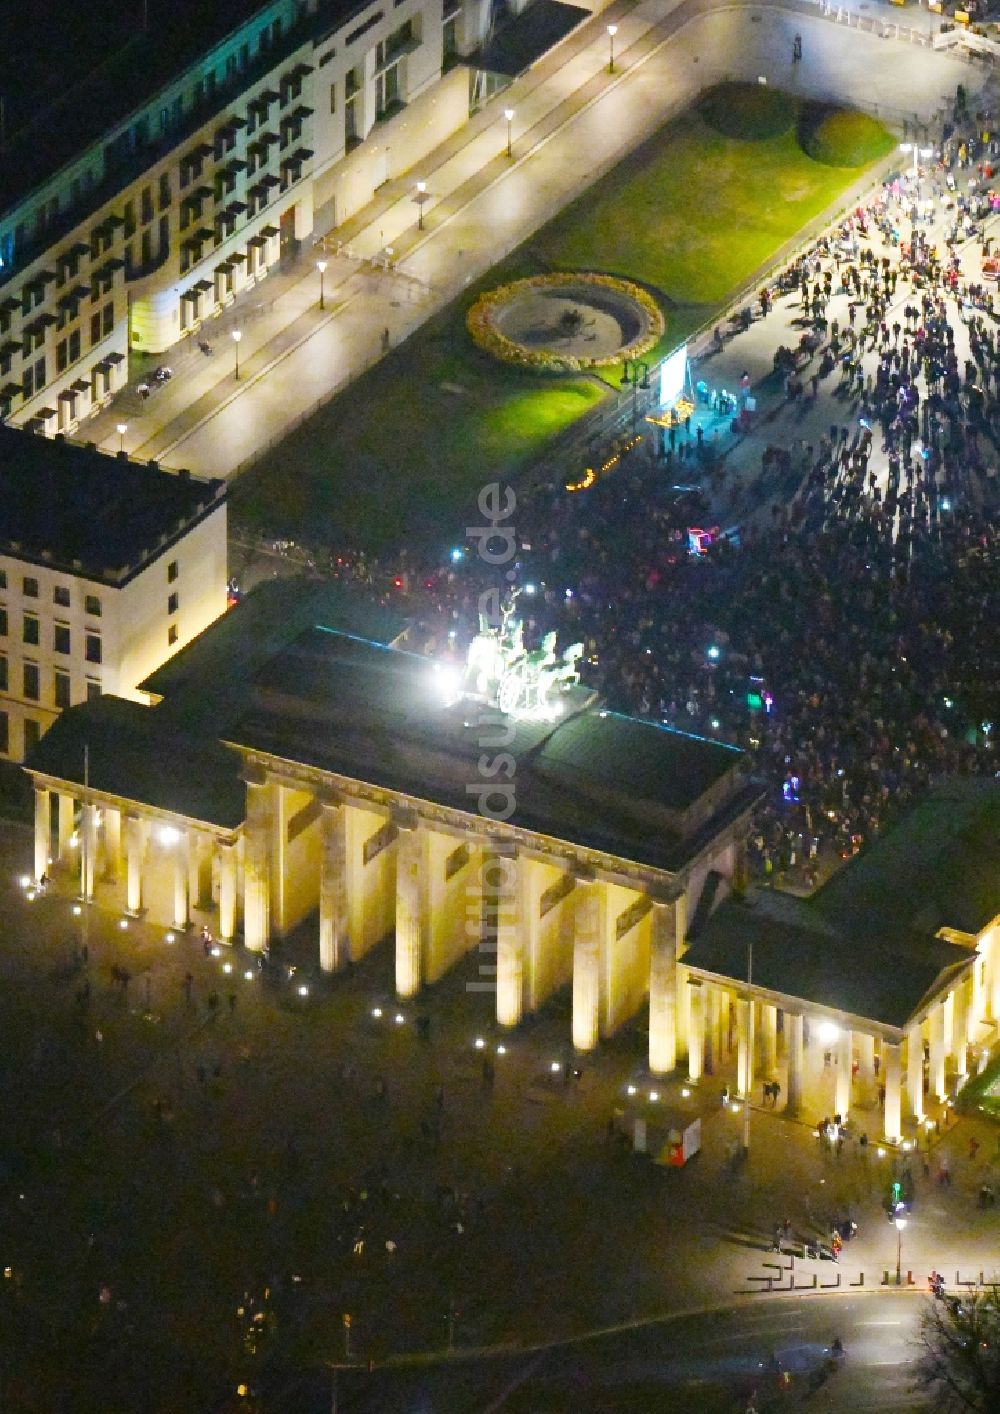 Nacht-Luftaufnahme Berlin - Nachtluftbild Geschichts- Denkmal Brandenburger Tor am Pariser Platz - Unter den Linden im Ortsteil Mitte in Berlin, Deutschland